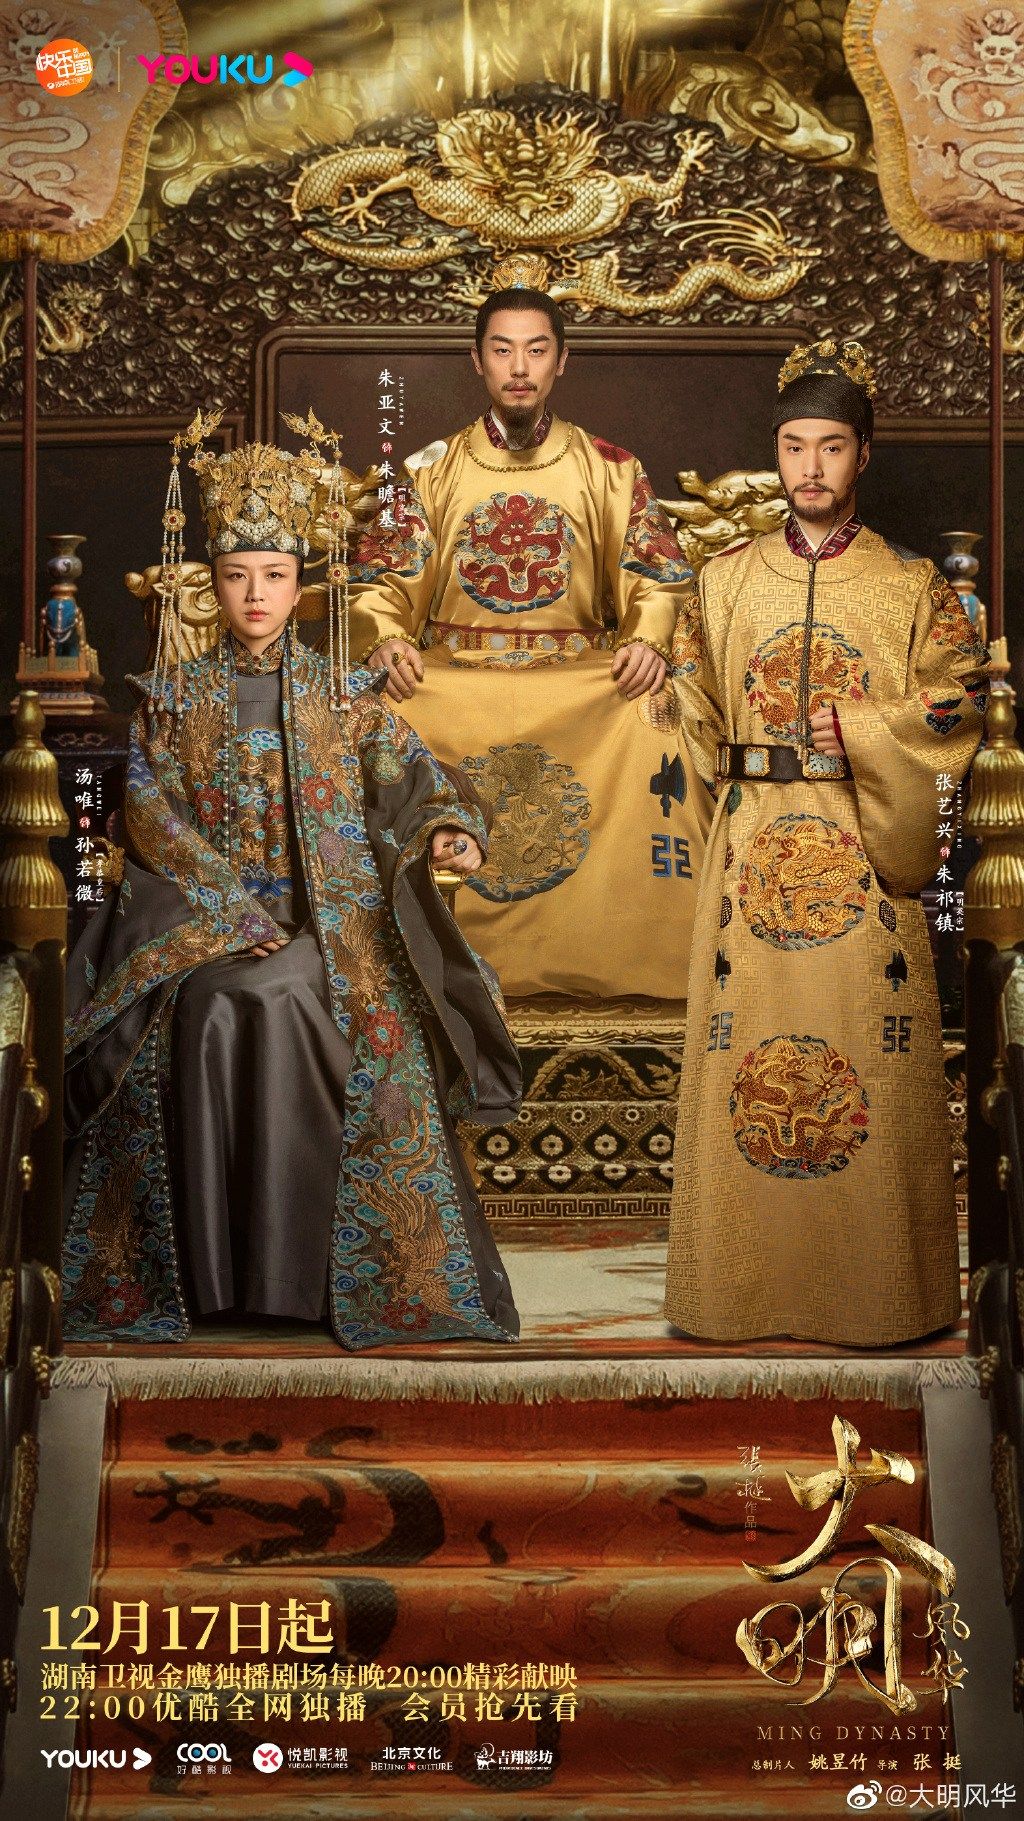 Phim cung đấu Trung Quốc hay: Đại Minh phong hoa - Ming Dynasty (2019)